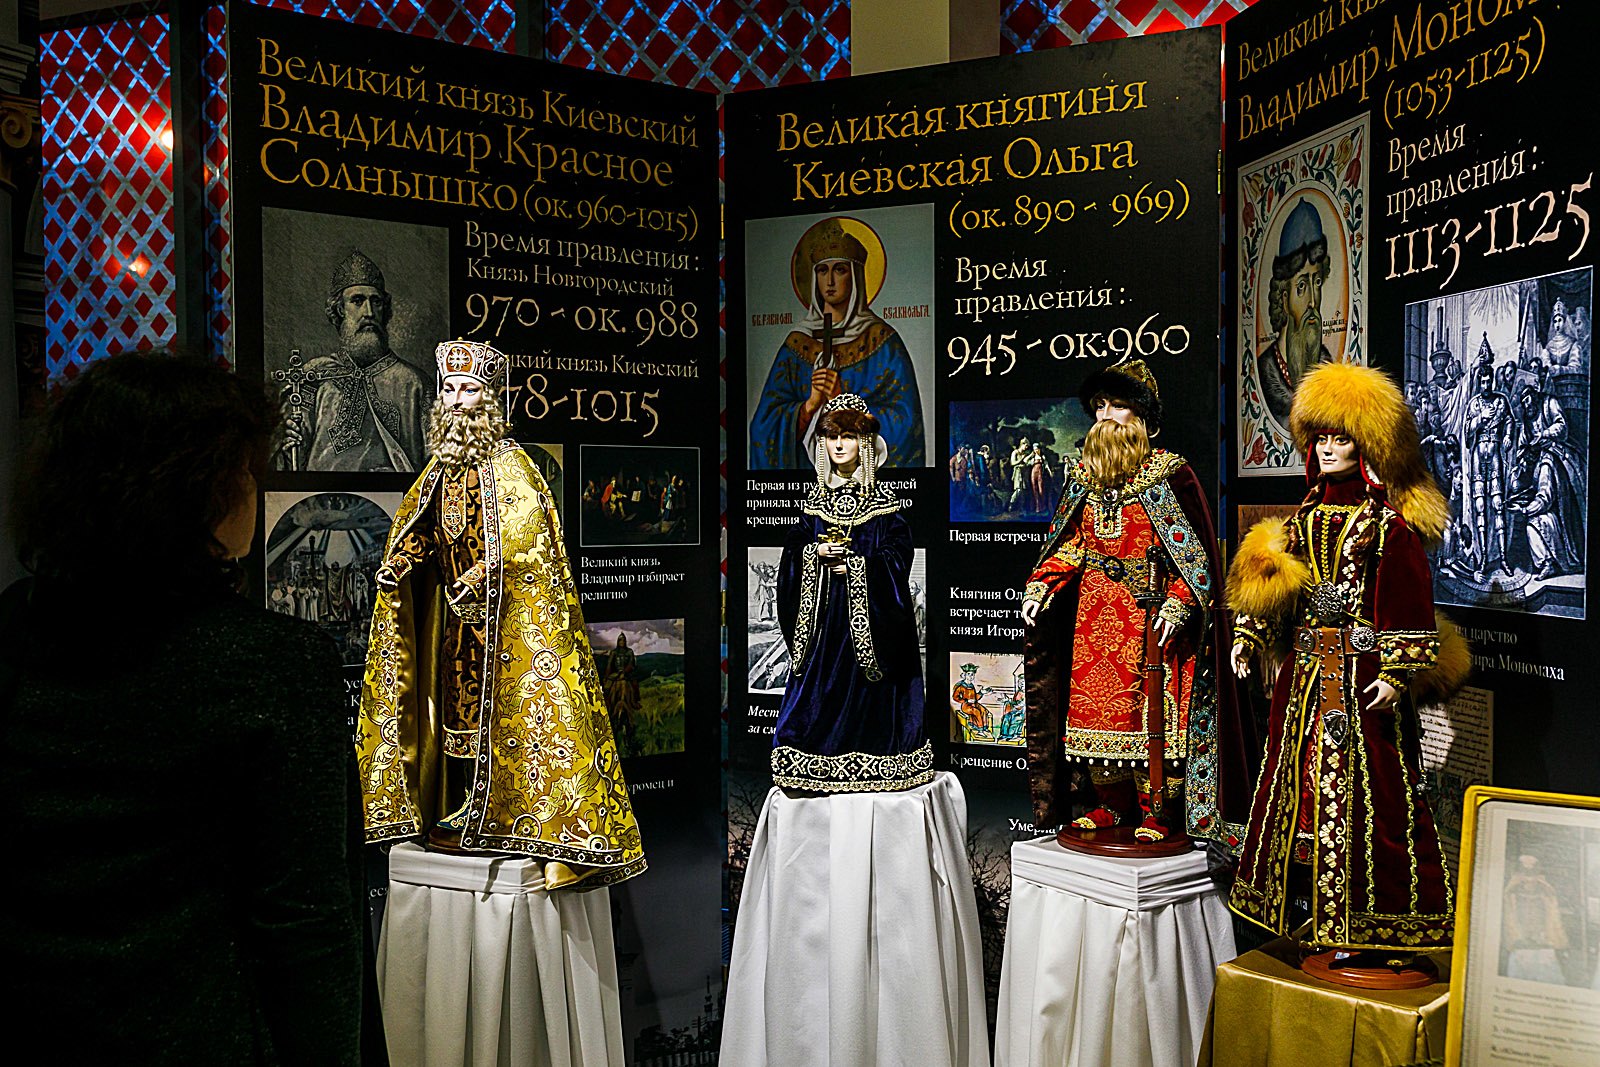 Какие выставки в москве в марте. Экспозиция музея кукол ВДНХ. Музей кукол в Москве на ВДНХ. Музей кукол ВДНХ павильон 16. Выставка кукол на ВДНХ павильон 16.